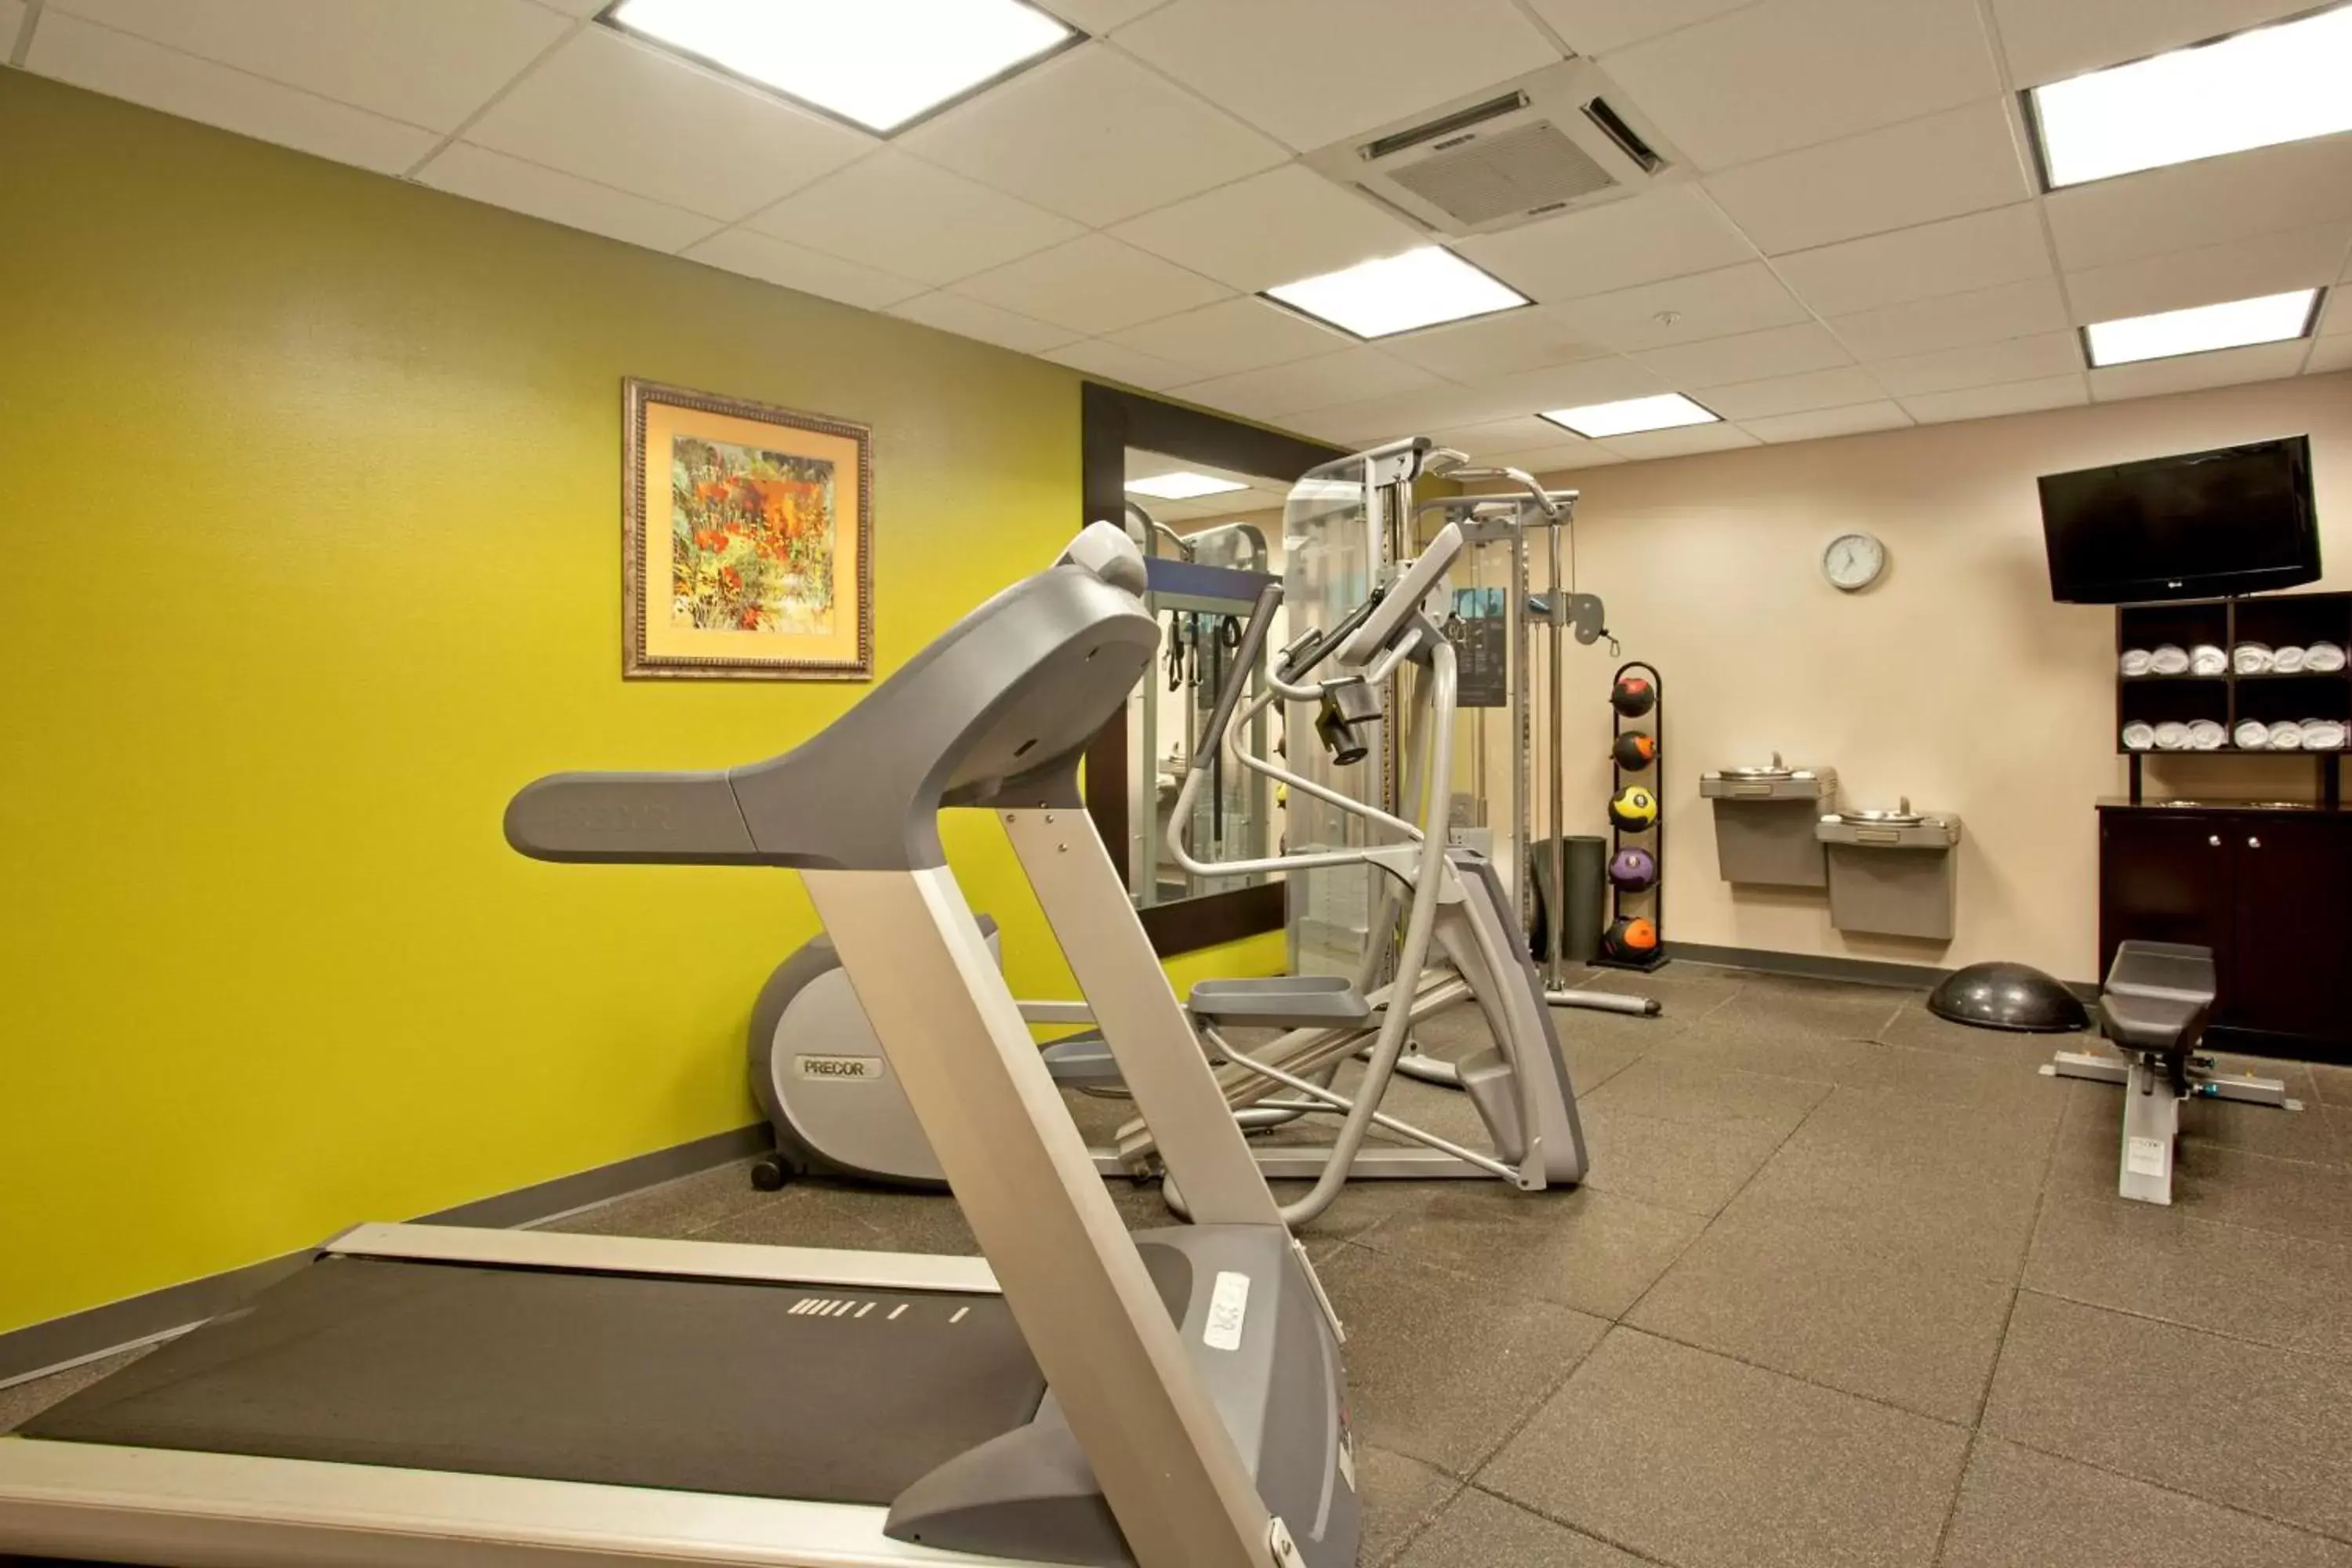 Fitness centre/facilities, Fitness Center/Facilities in Hampton Inn & Suites Nashville-Smyrna